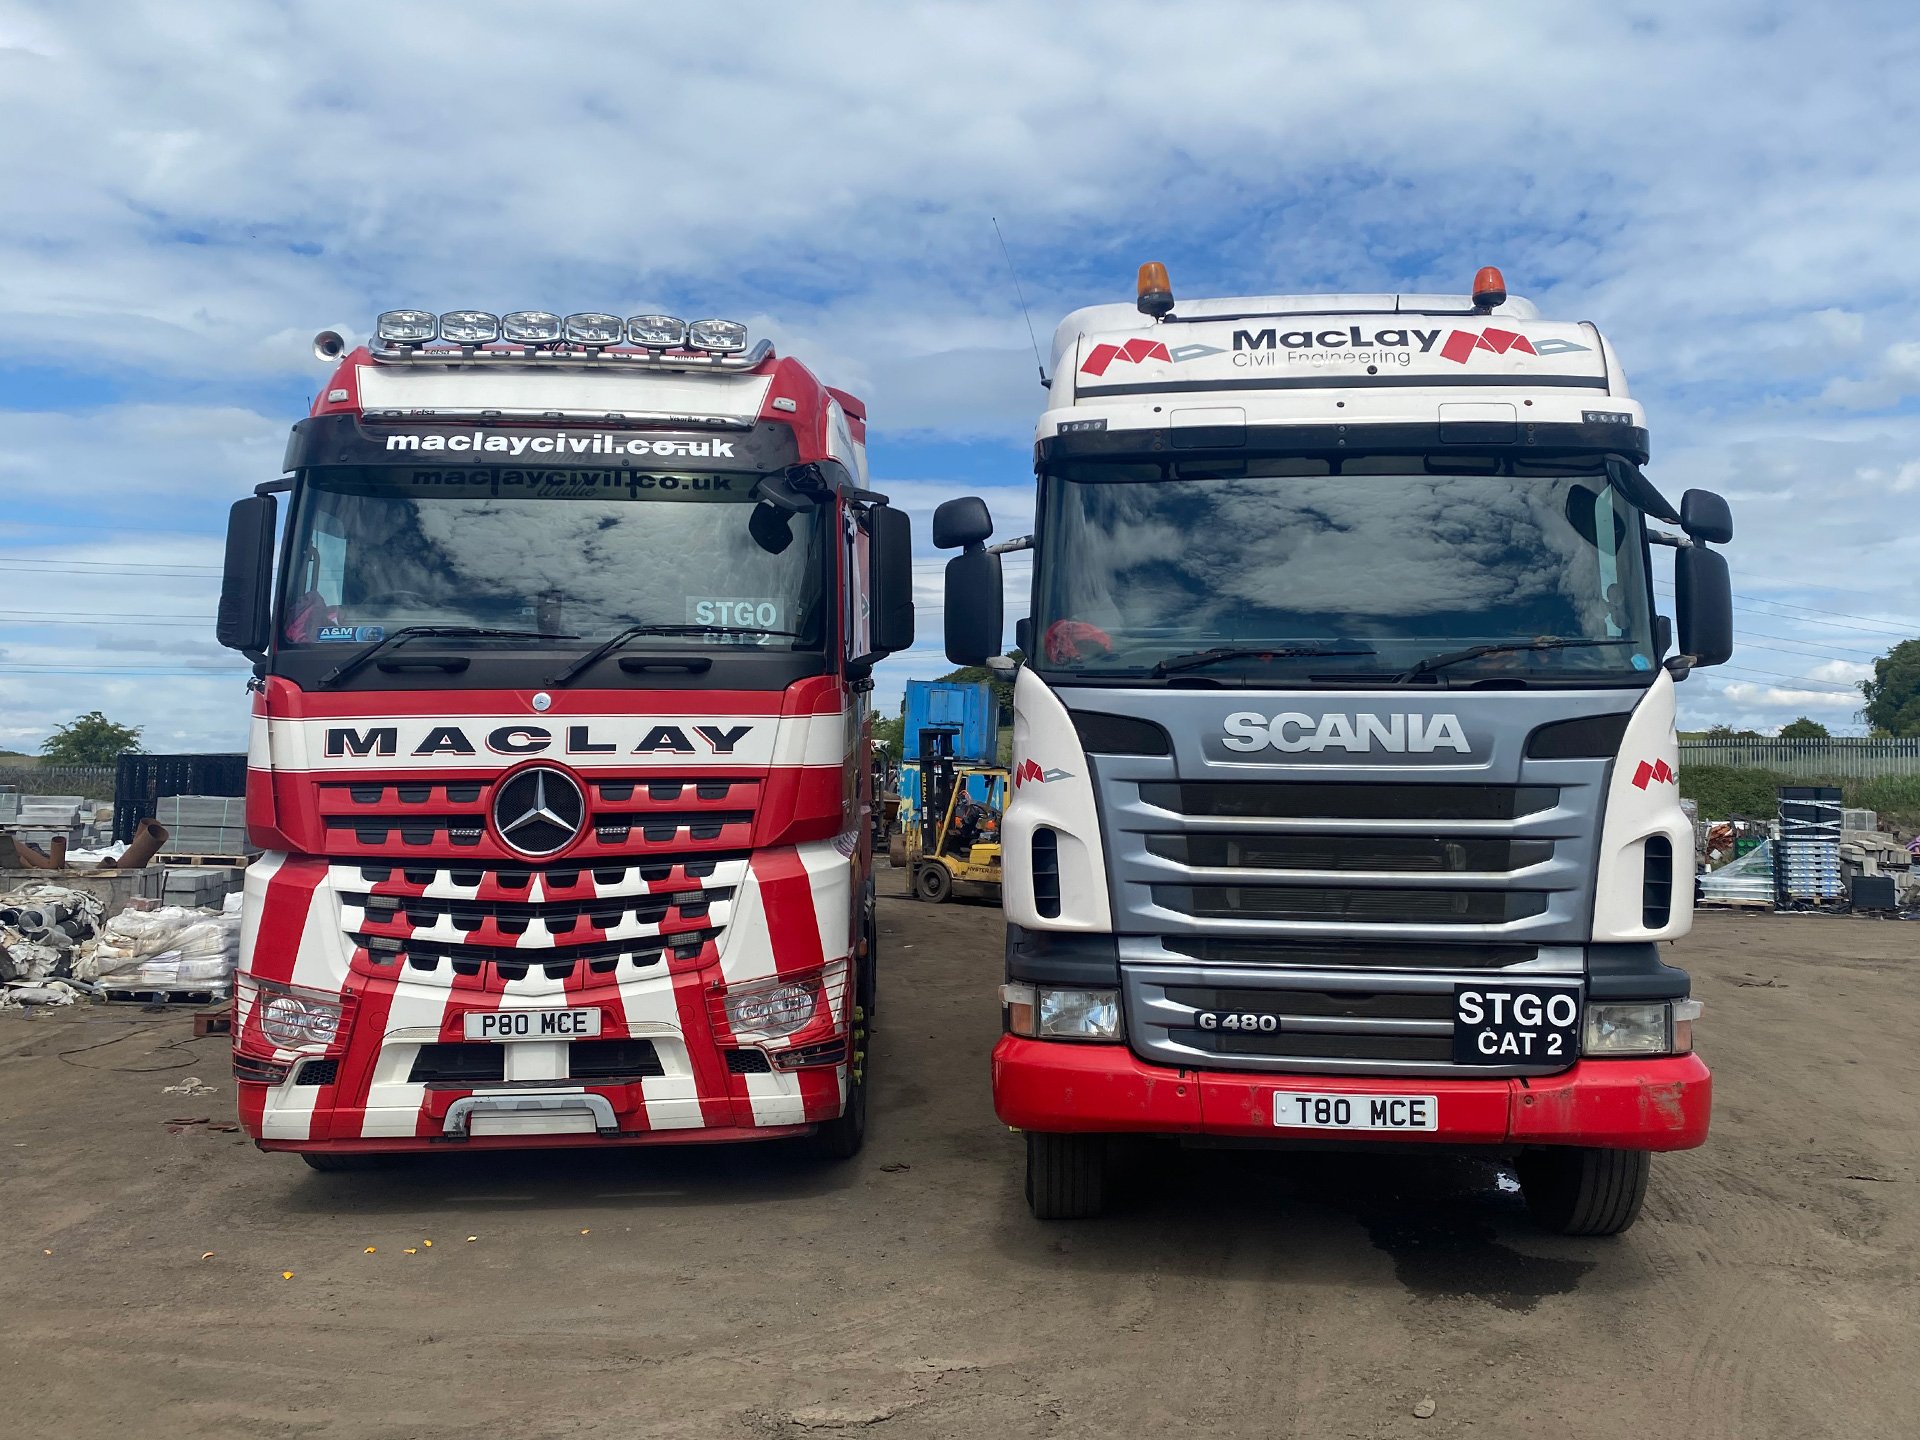 Maclay Civil Engineering slide 2 lorries